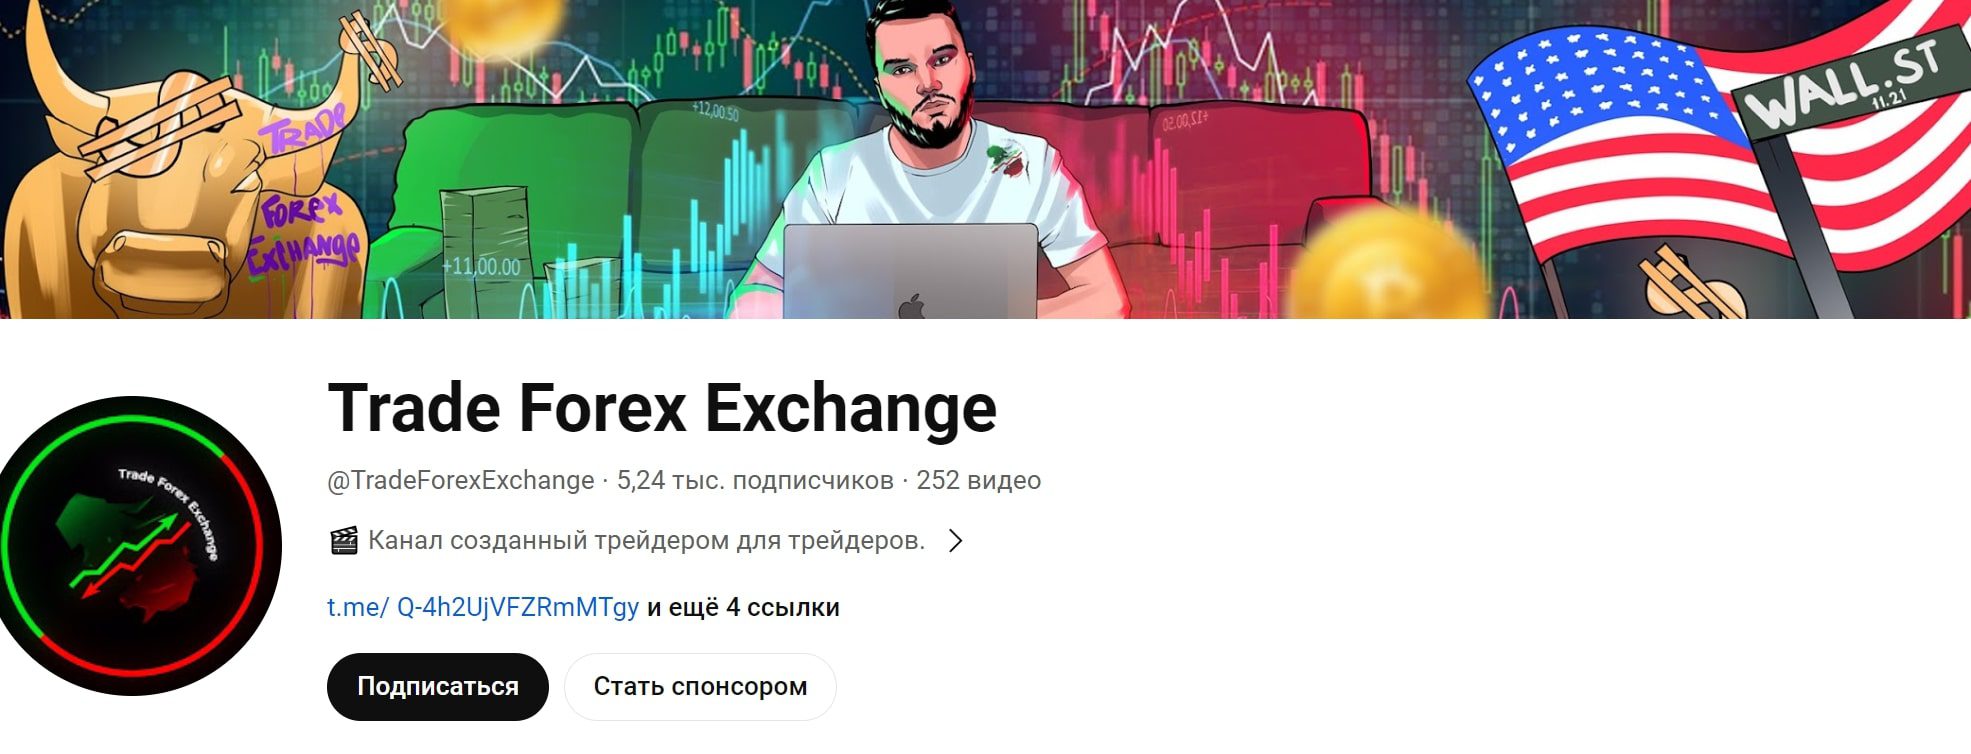 Trade Forex Exchange проект